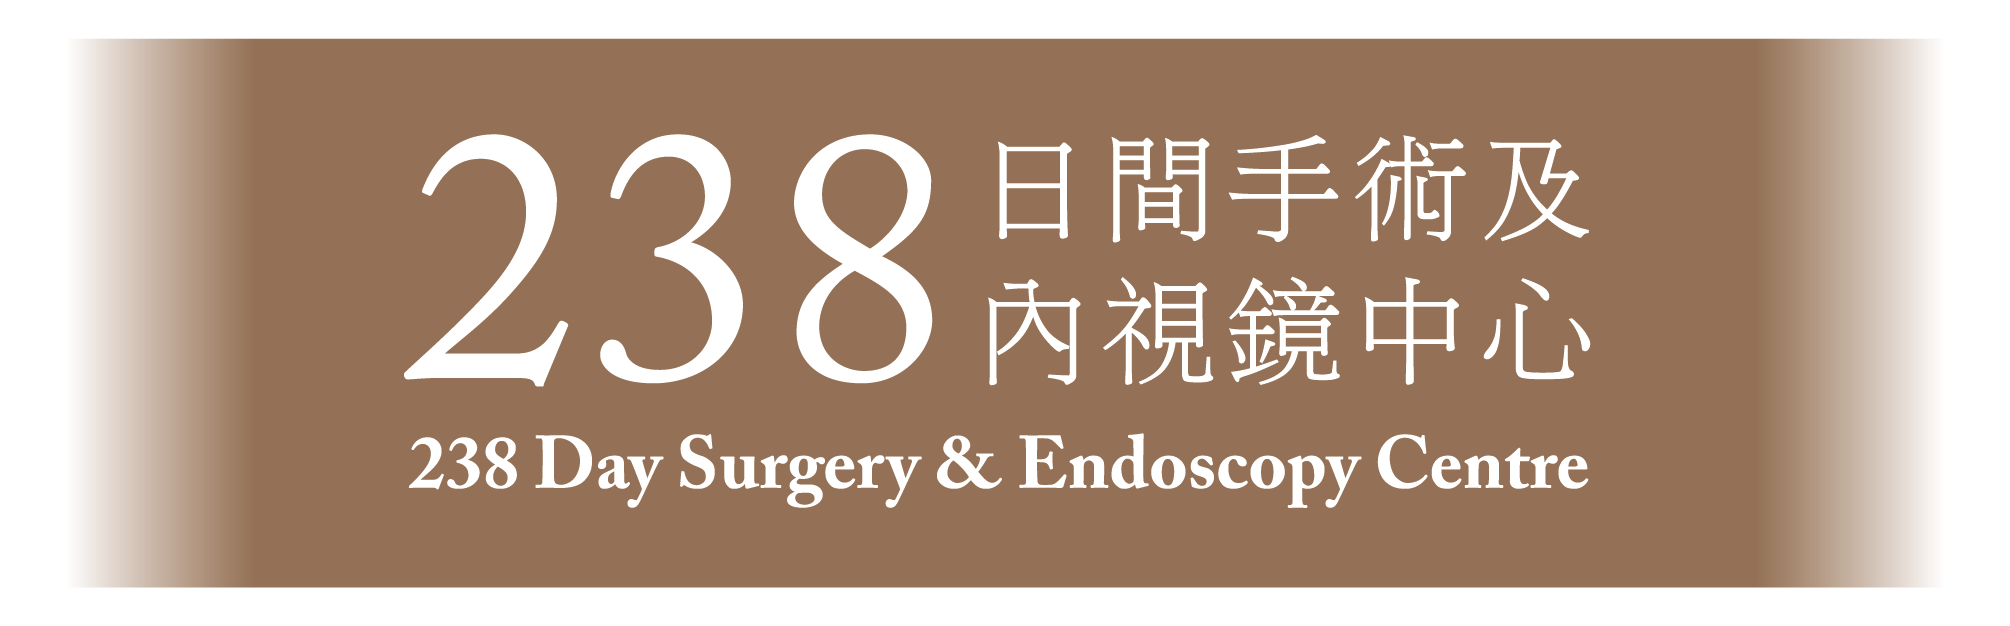 238 Day Surgery & Endoscopy Centre